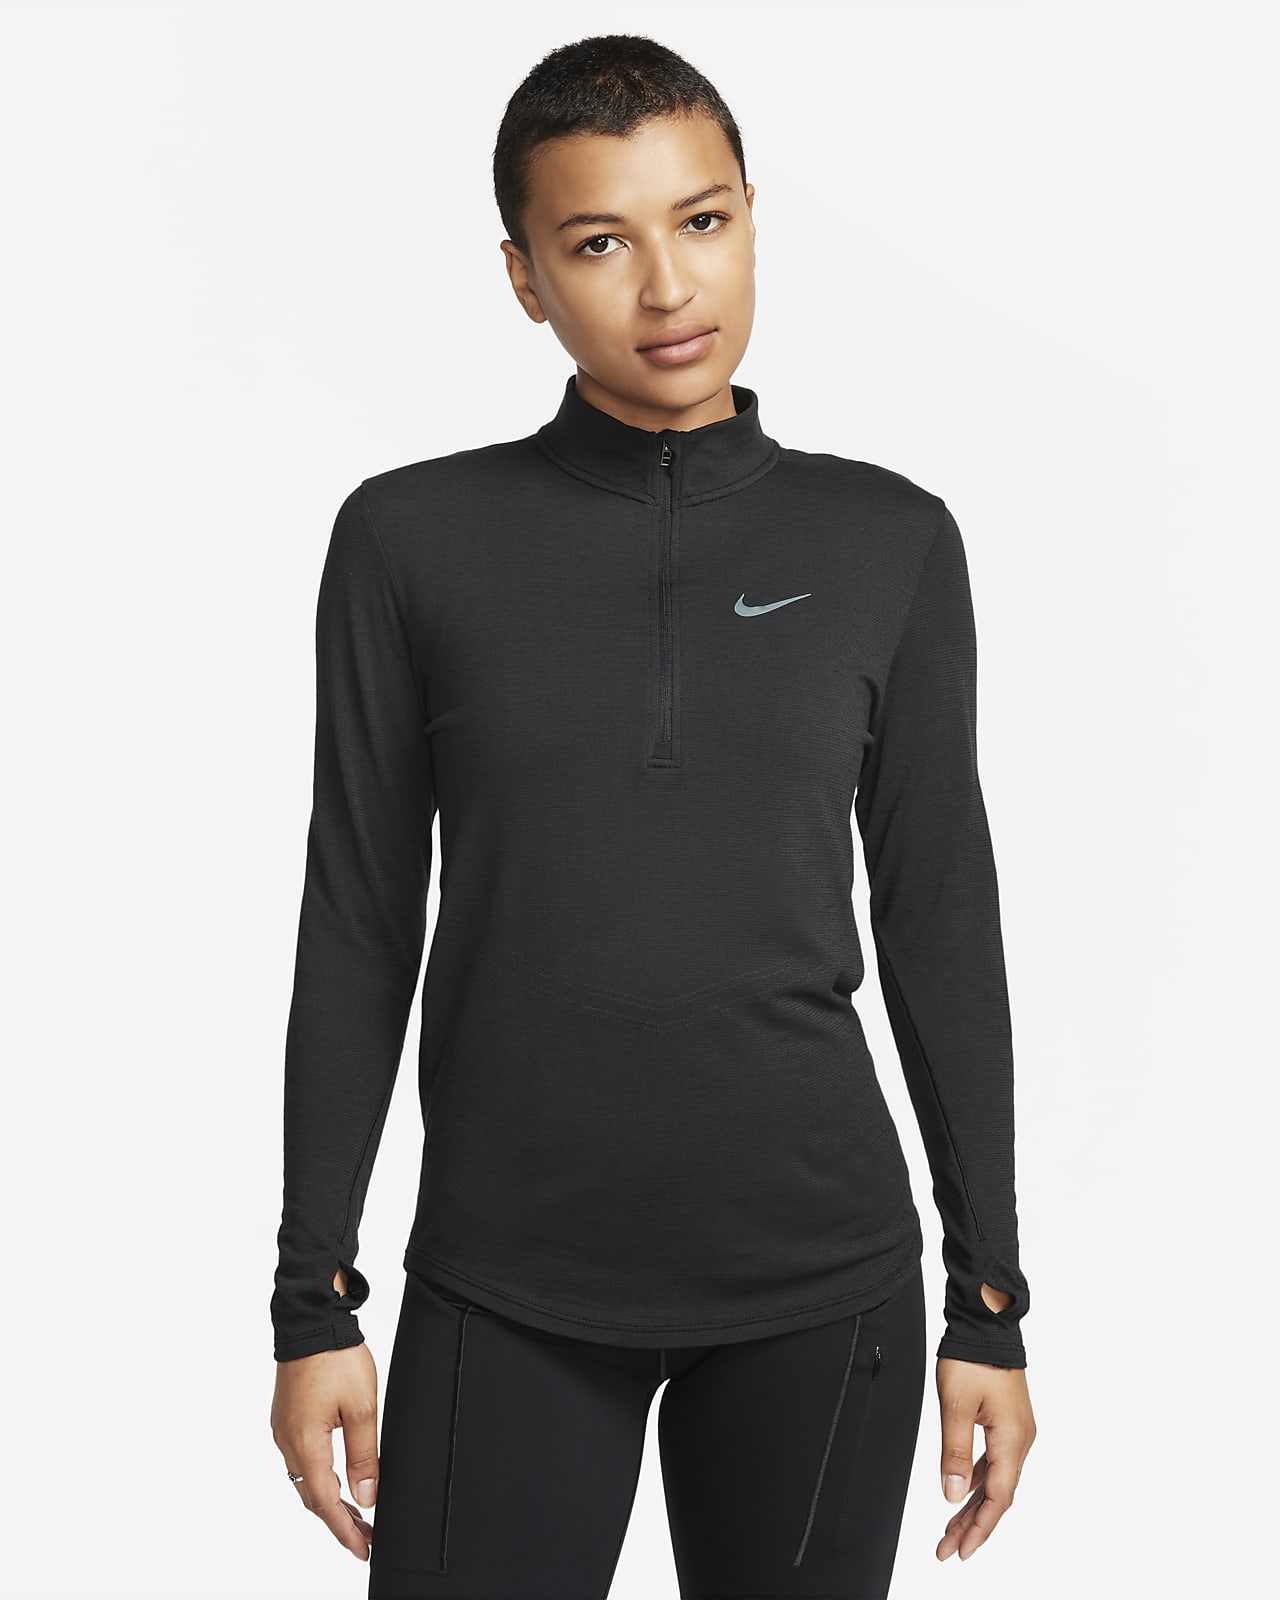 Långärmad löpartröja i ull Nike Dri-FIT Swift för kvinnor